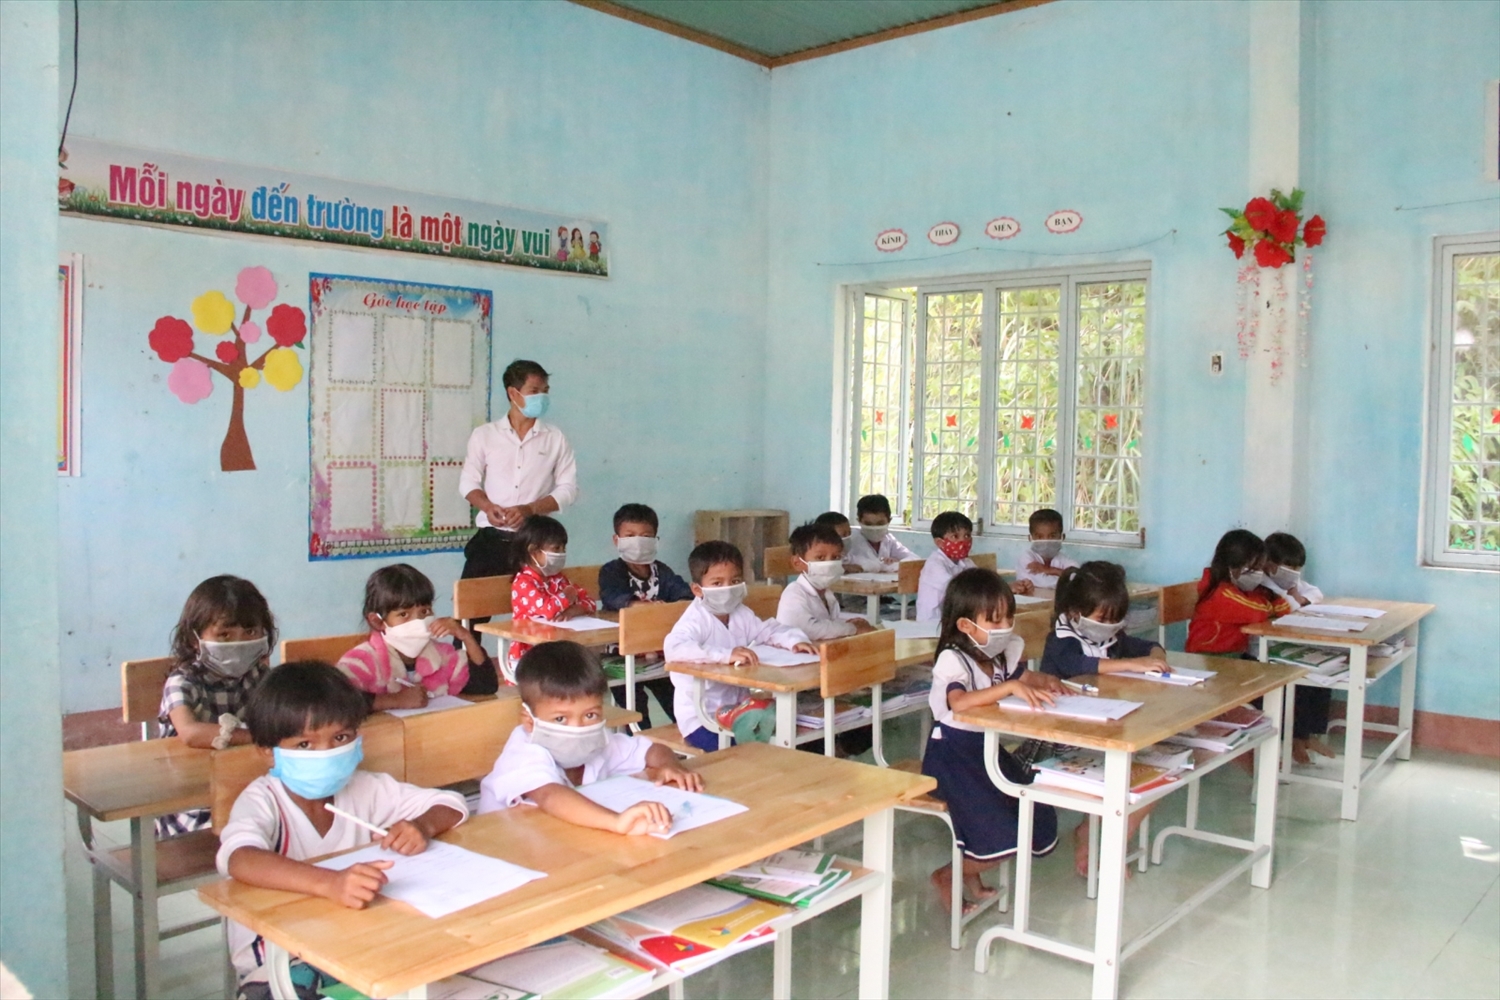 Chính sách tổng thể nhằm bảo đảm mọi HS người DTTS đều có cơ hội bình đẳng trong việc tiếp cận chính sách hỗ trợ phát triển giáo dục. (Trong ảnh: Thầy và trò Trường PTDTBT Tiểu học – THCS Tu Mơ Rông, tỉnh Kon Tum)